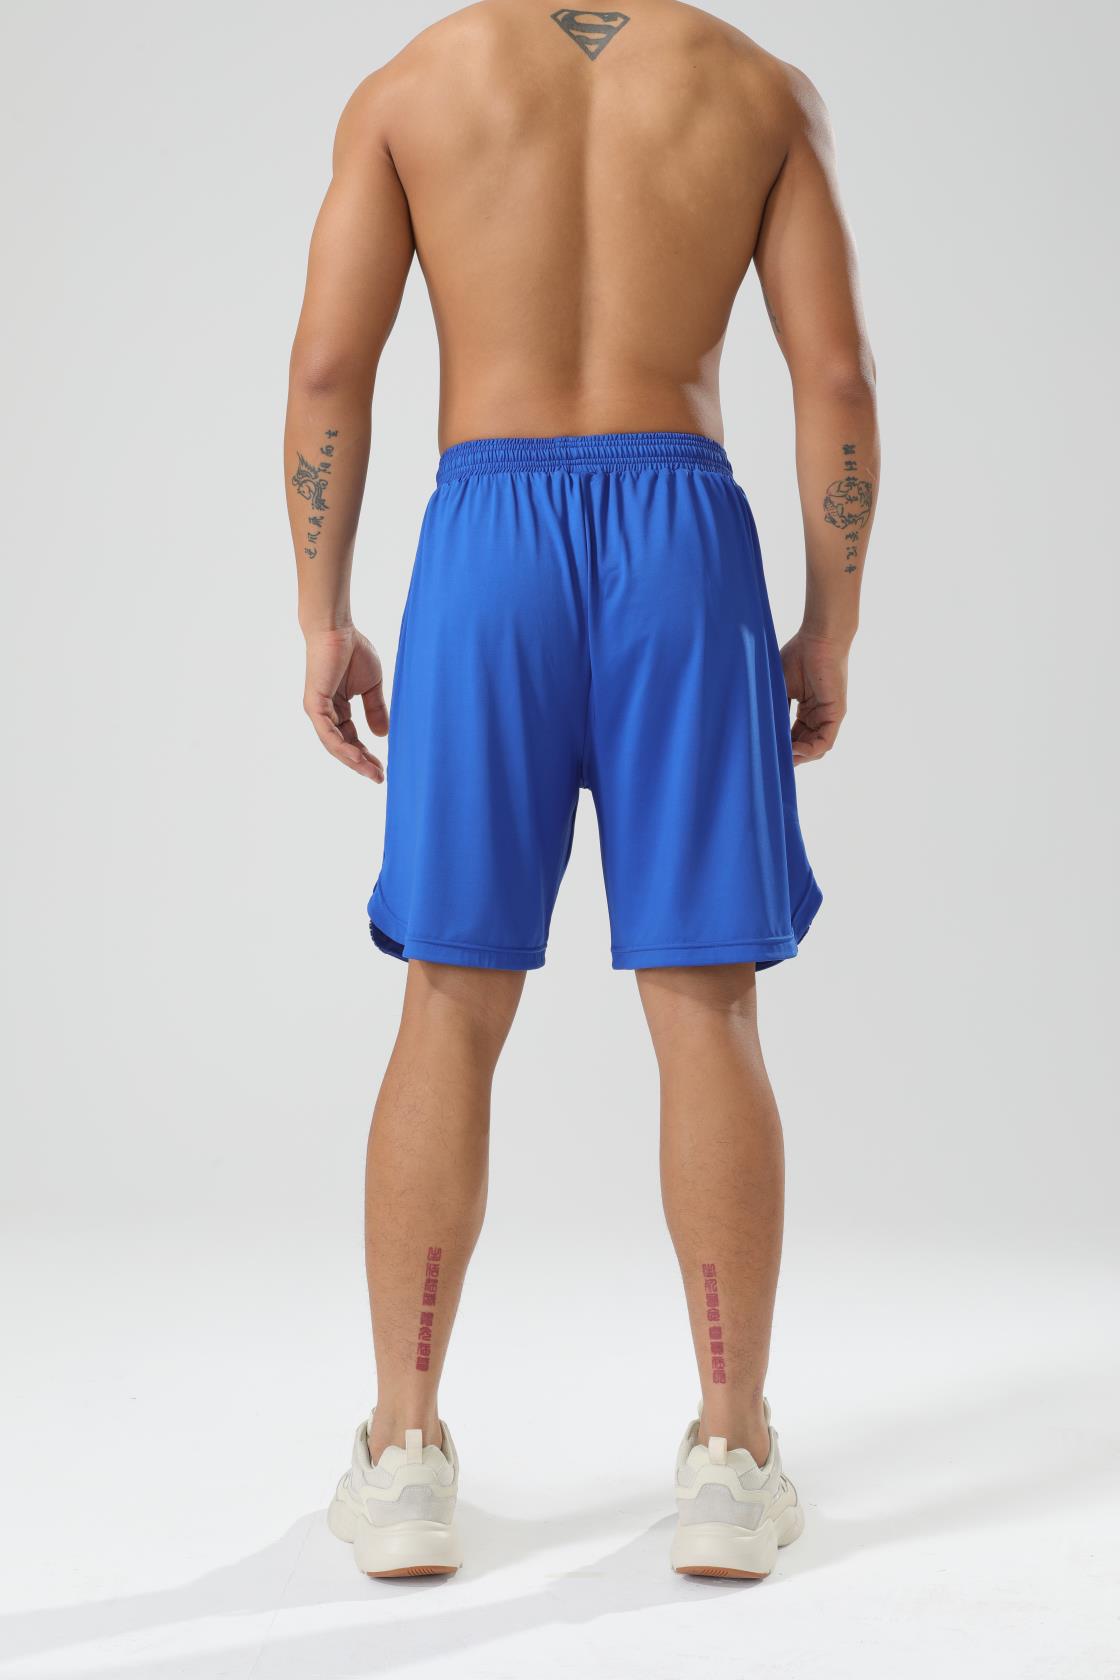 CoreD Pro Shorts - Men's